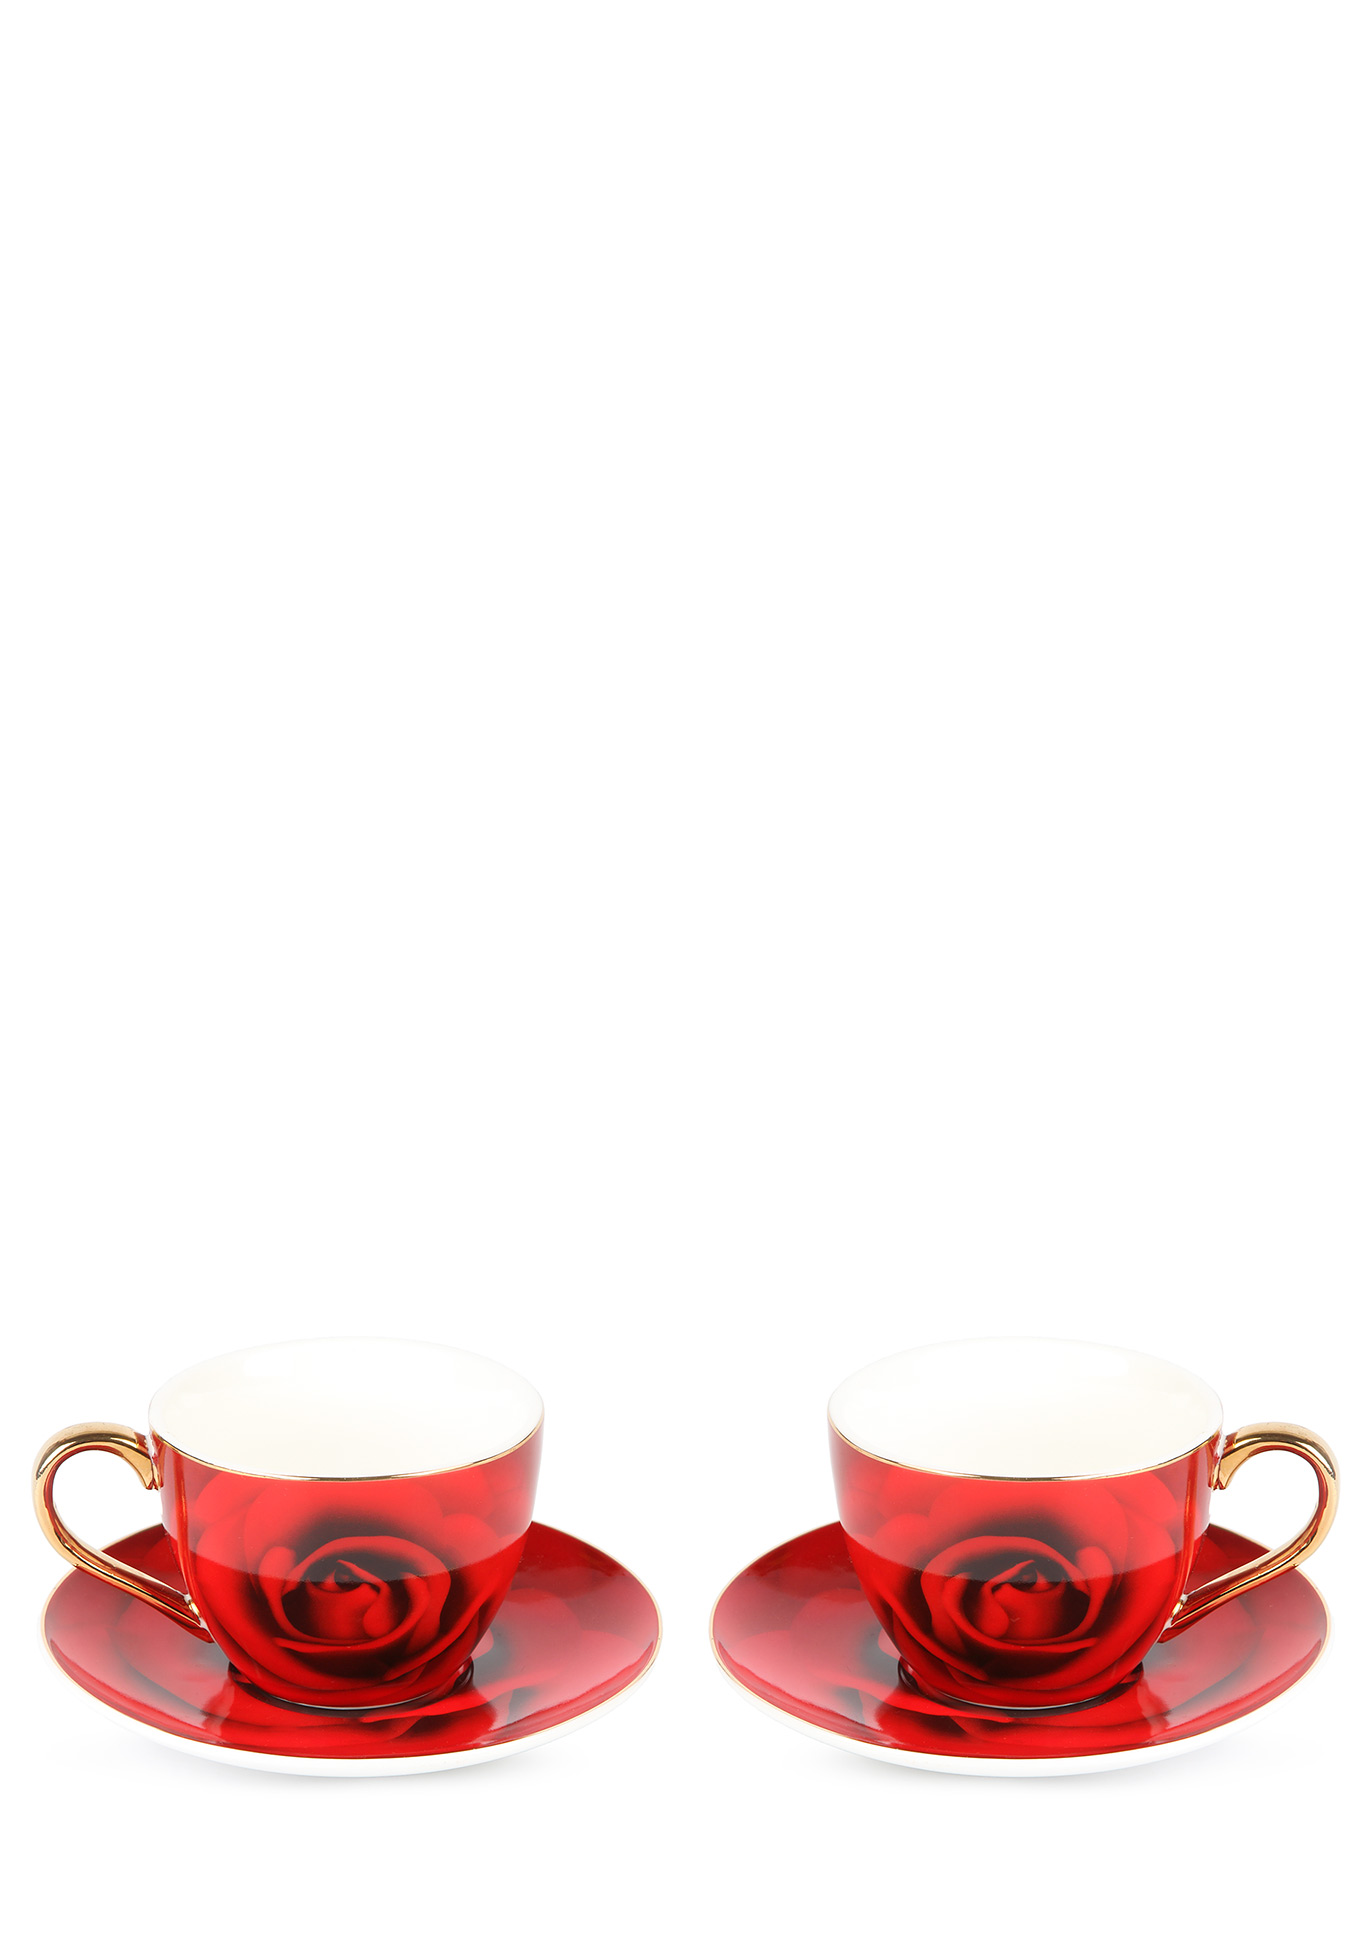 Чайный набор "Итальянская роза" на 4 персоны